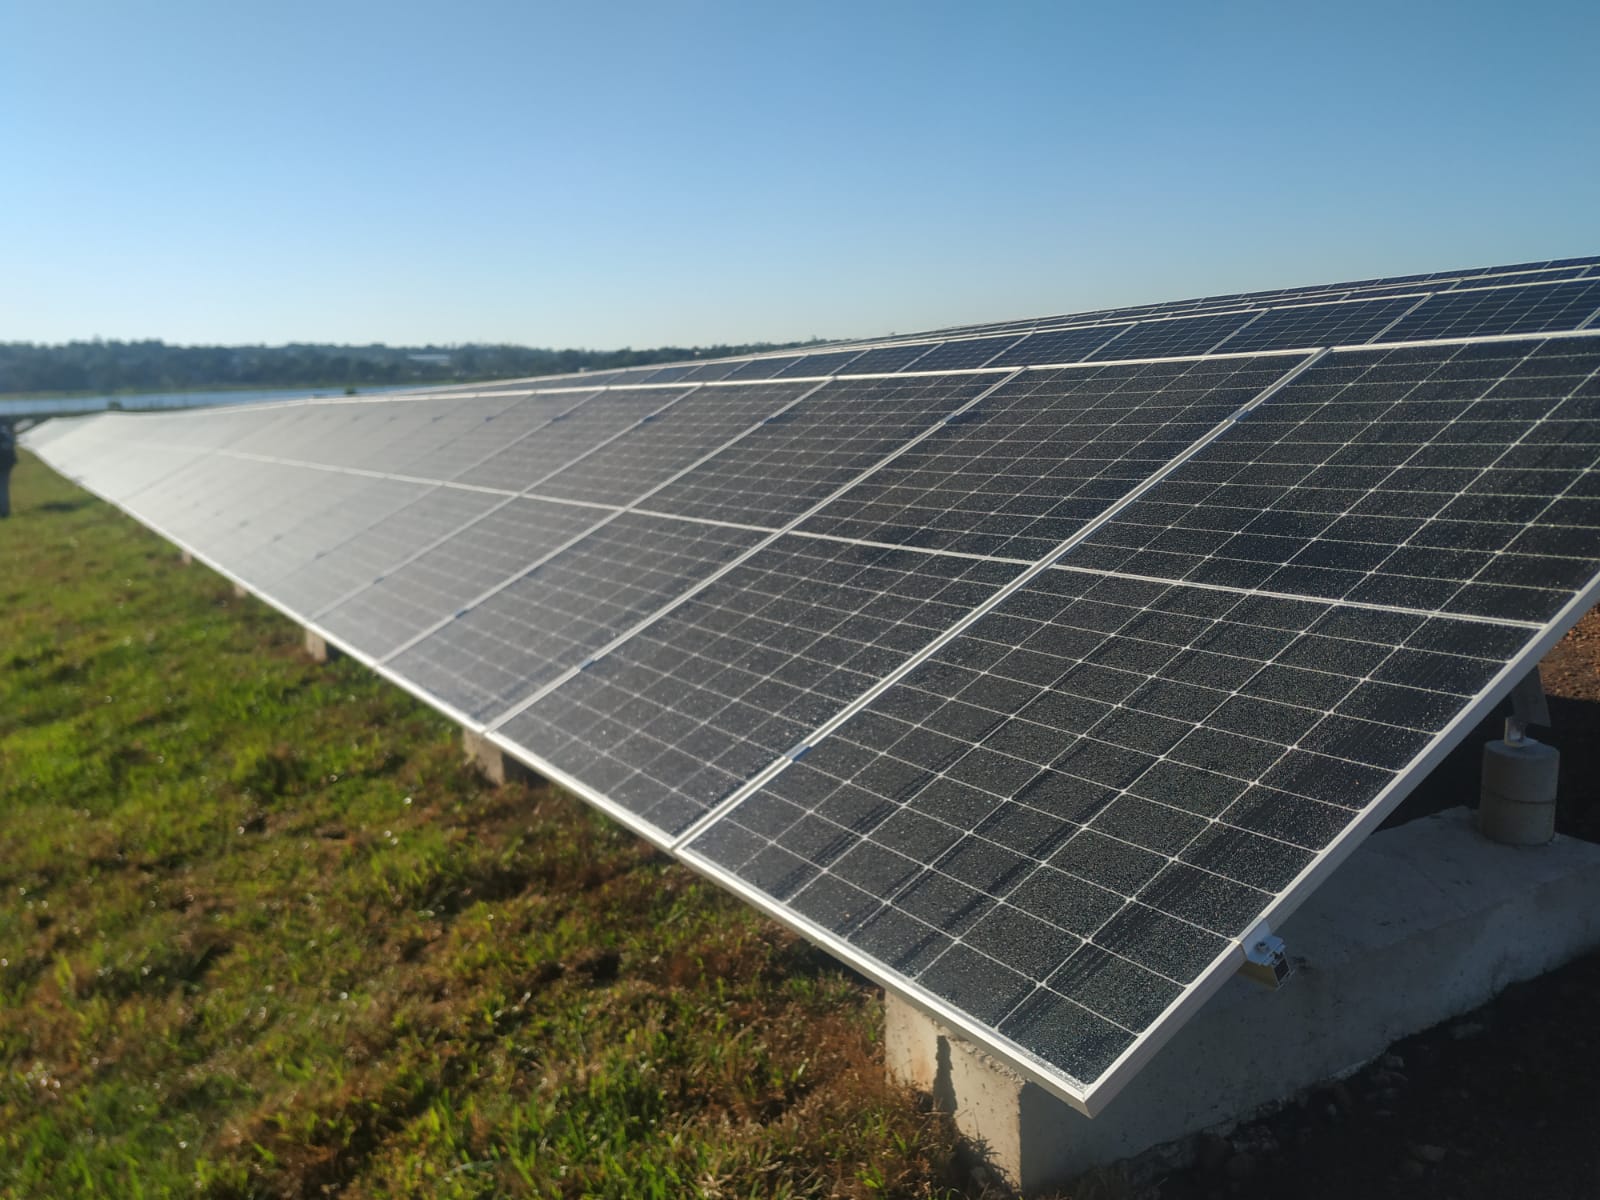 Parque Solar Fotovoltaico: "Muchísimas familias tendrán energía limpia", dijo Passalacqua y reiteró el reclamo por el Gasoducto imagen-4